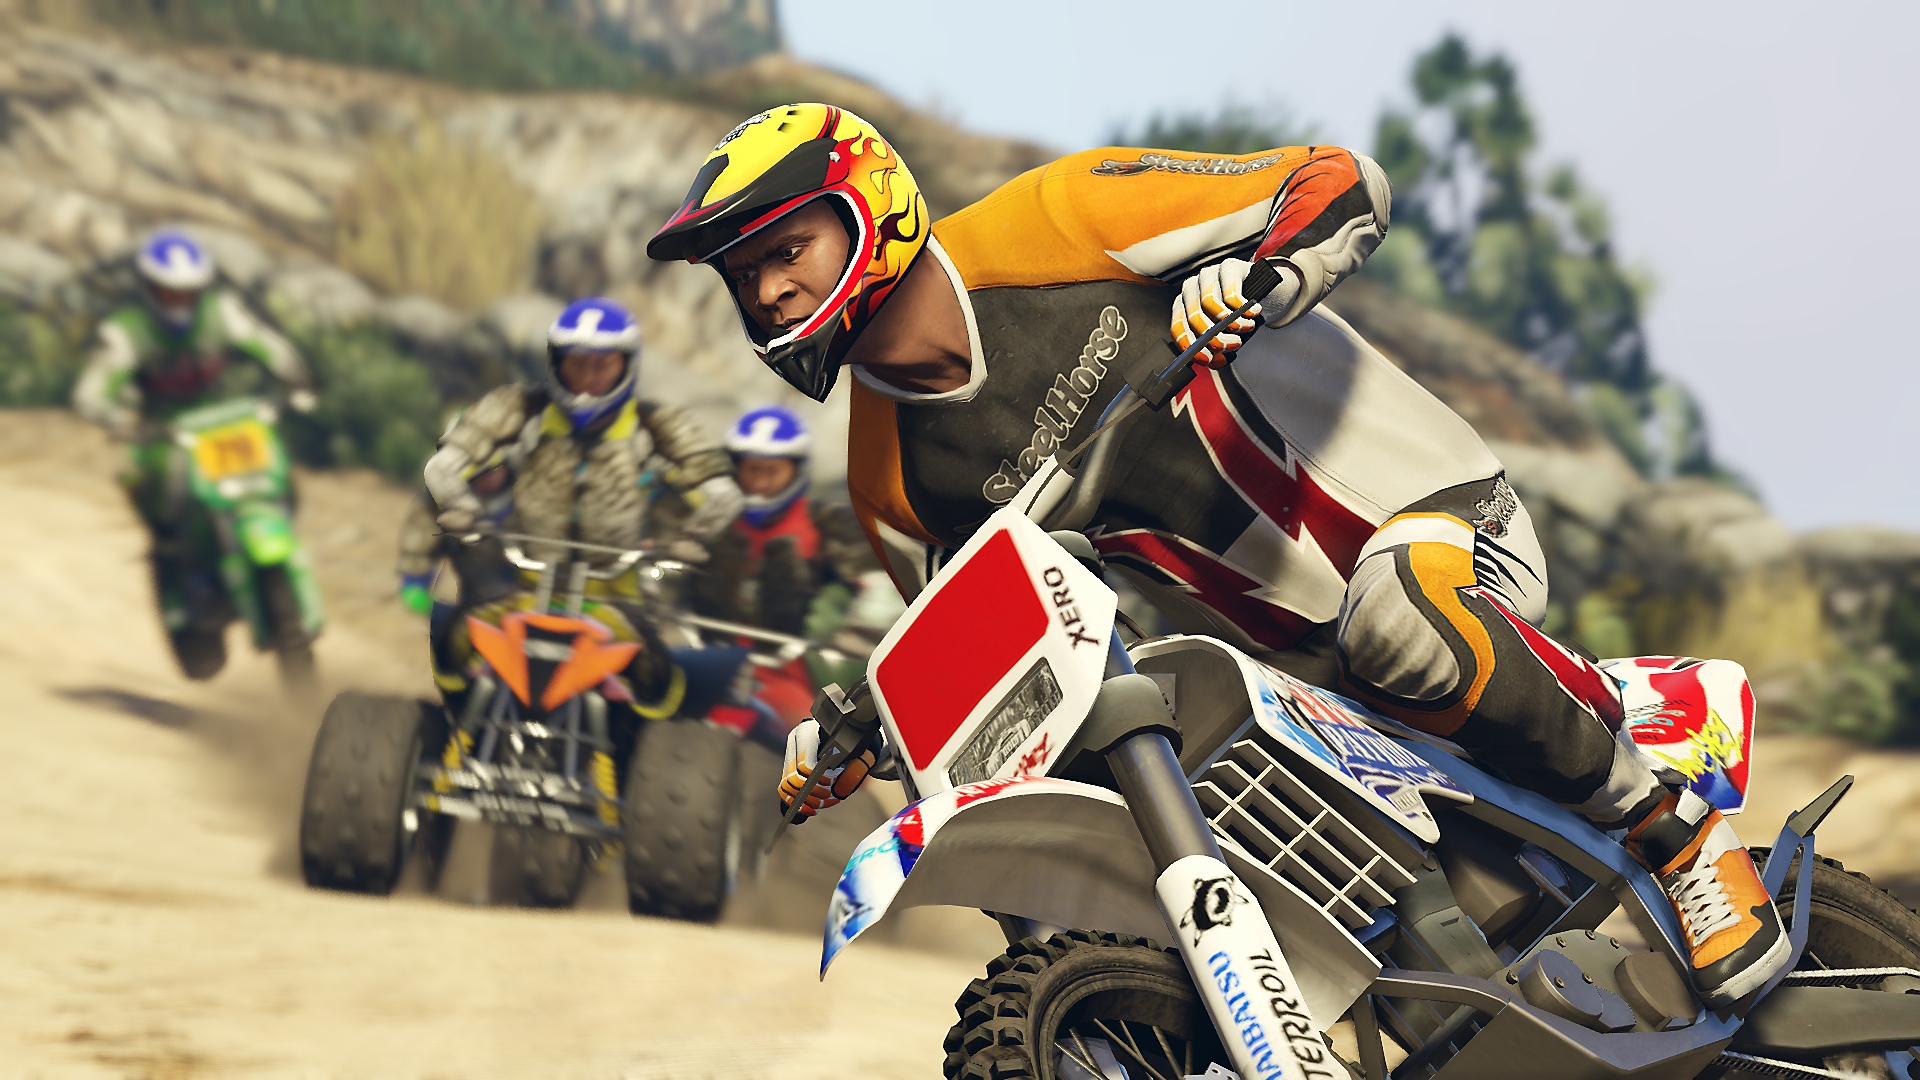 Grand Theft Auto V - Istantanea della schermata che mostra il protagonista, Franklin, che gareggia in sella a una moto da cross contro dei quad